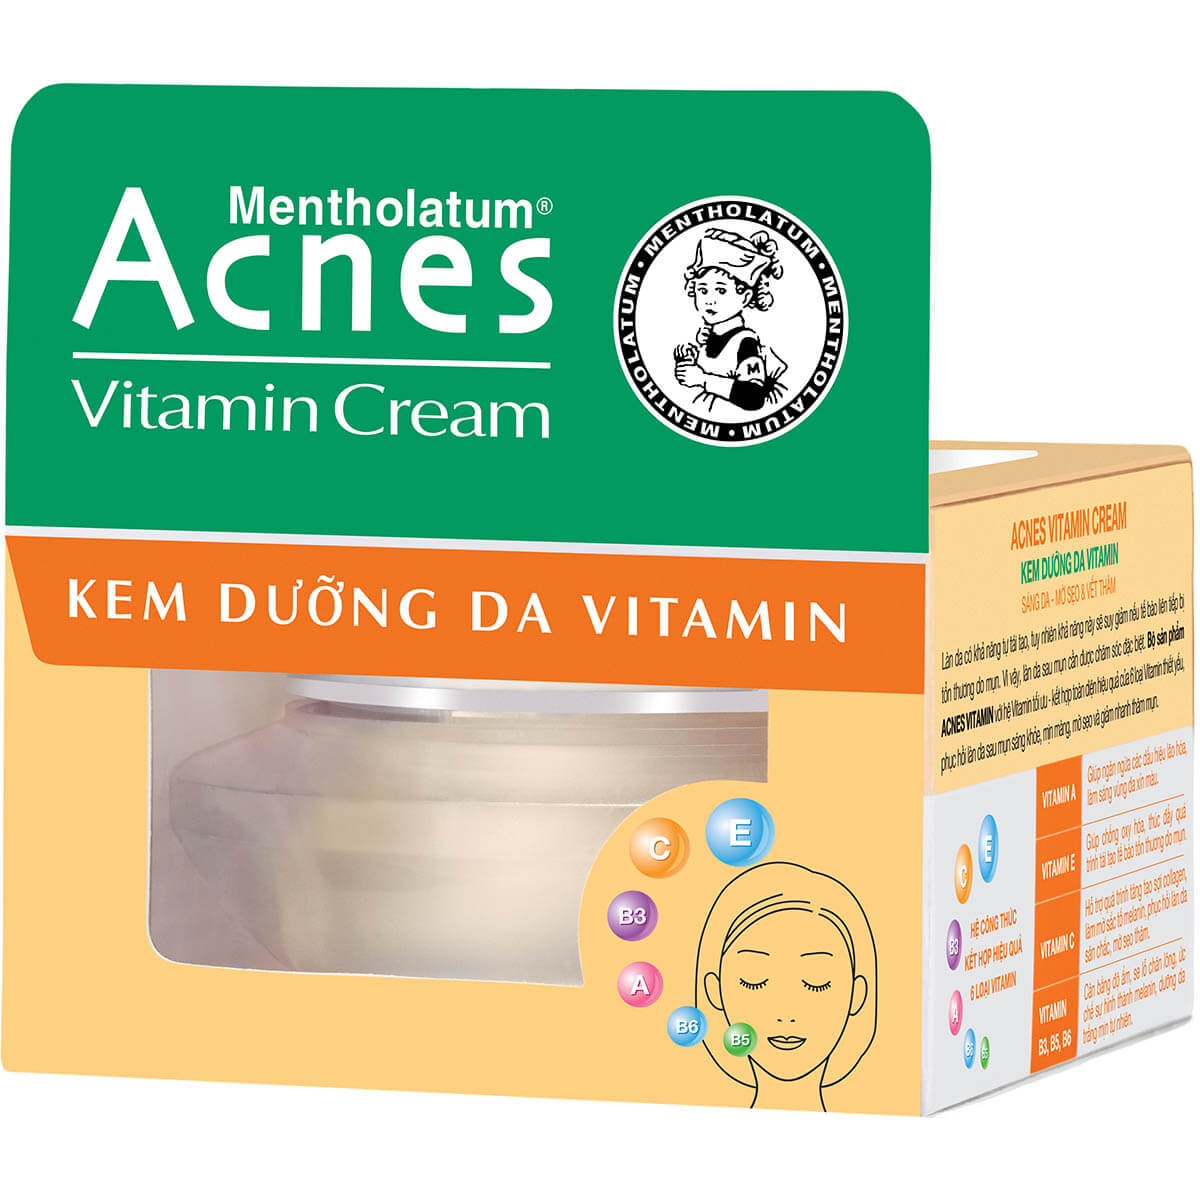 Acnes Vitamin Cream – Kem dưỡng da Vitamin * Mỹ phẩm CH T1T